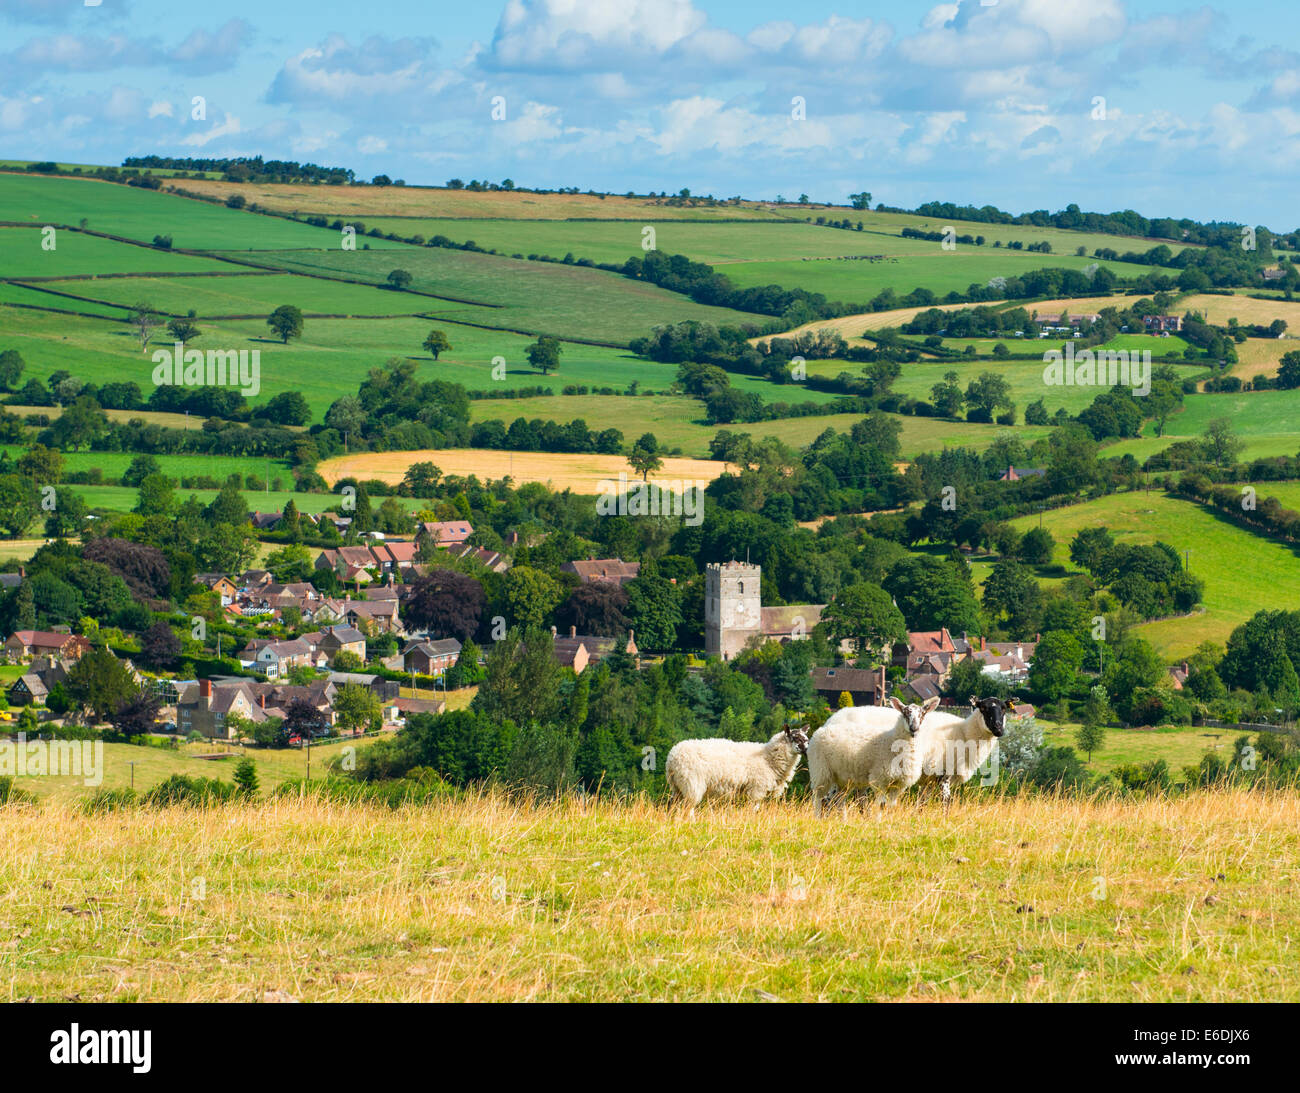 The village of Cardington, Shropshire, England, UK Stock Photo